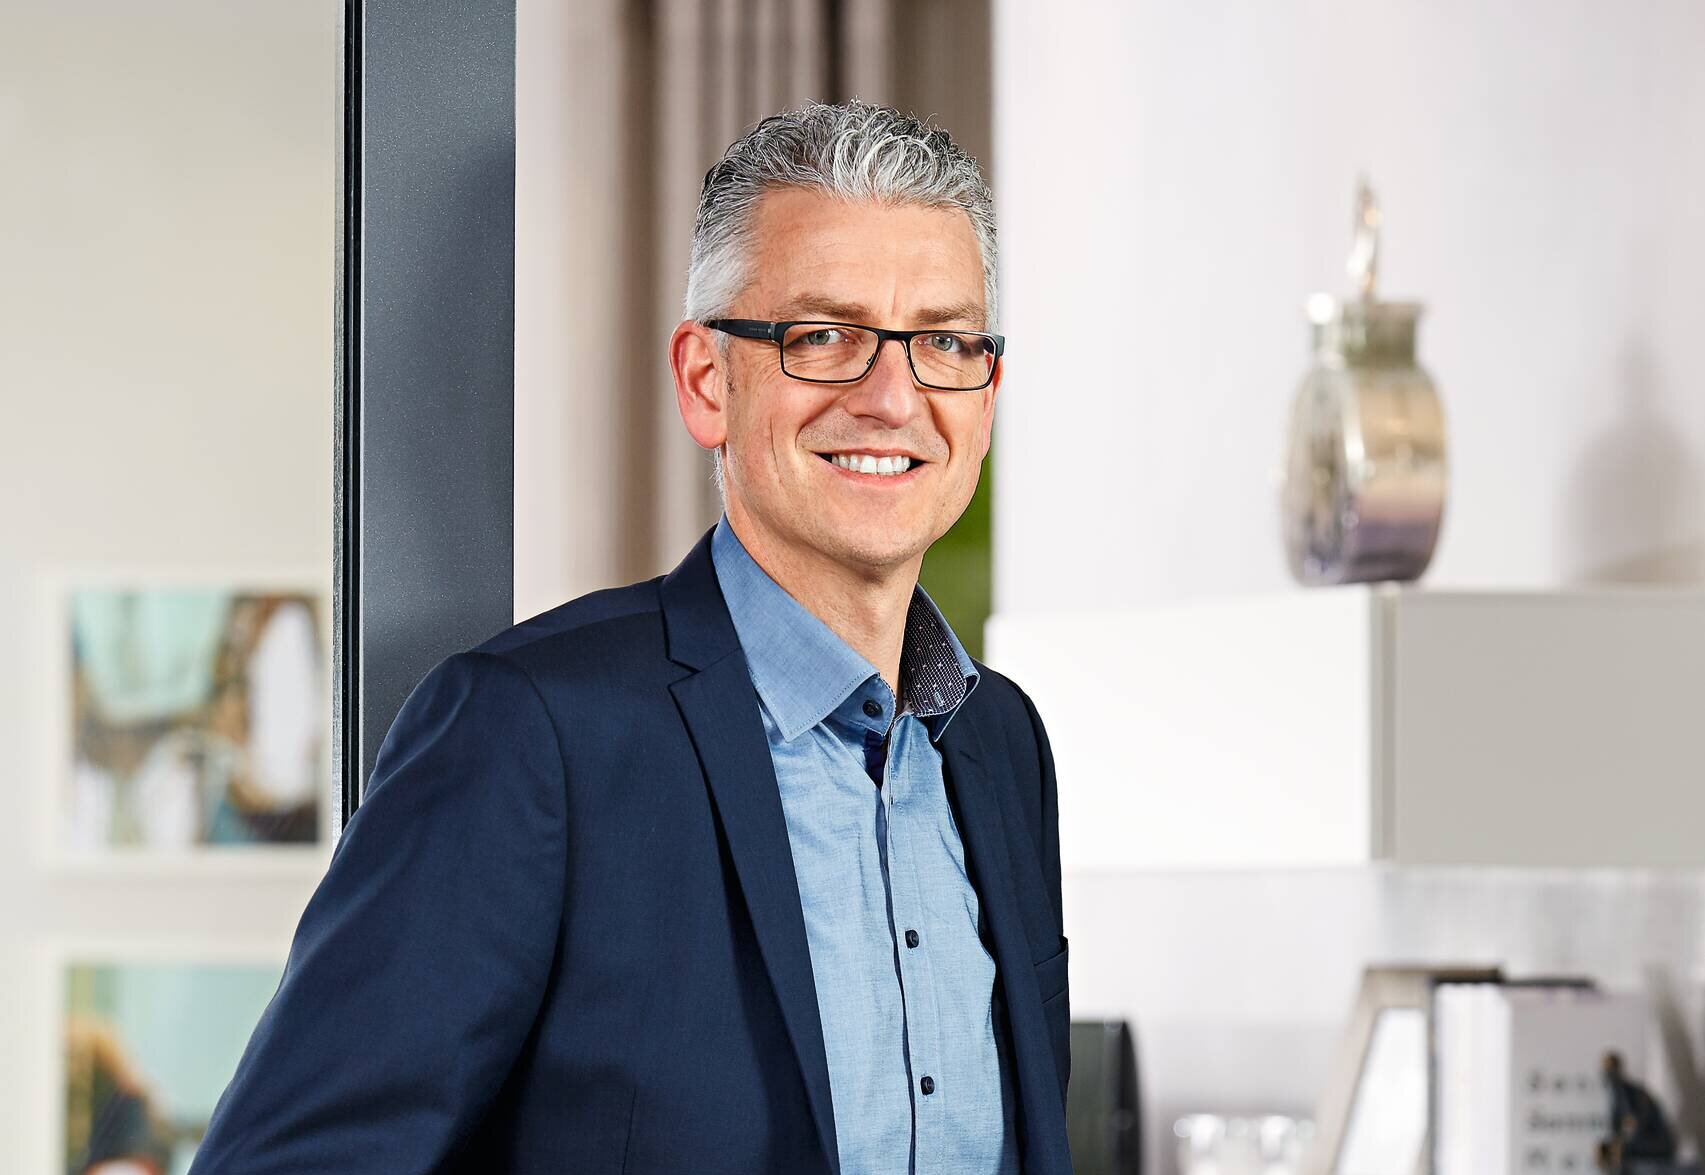 Siegfried Lettko, Produktmanager bei WeberHaus, kennt sich im Bereich Ausstattung aus.